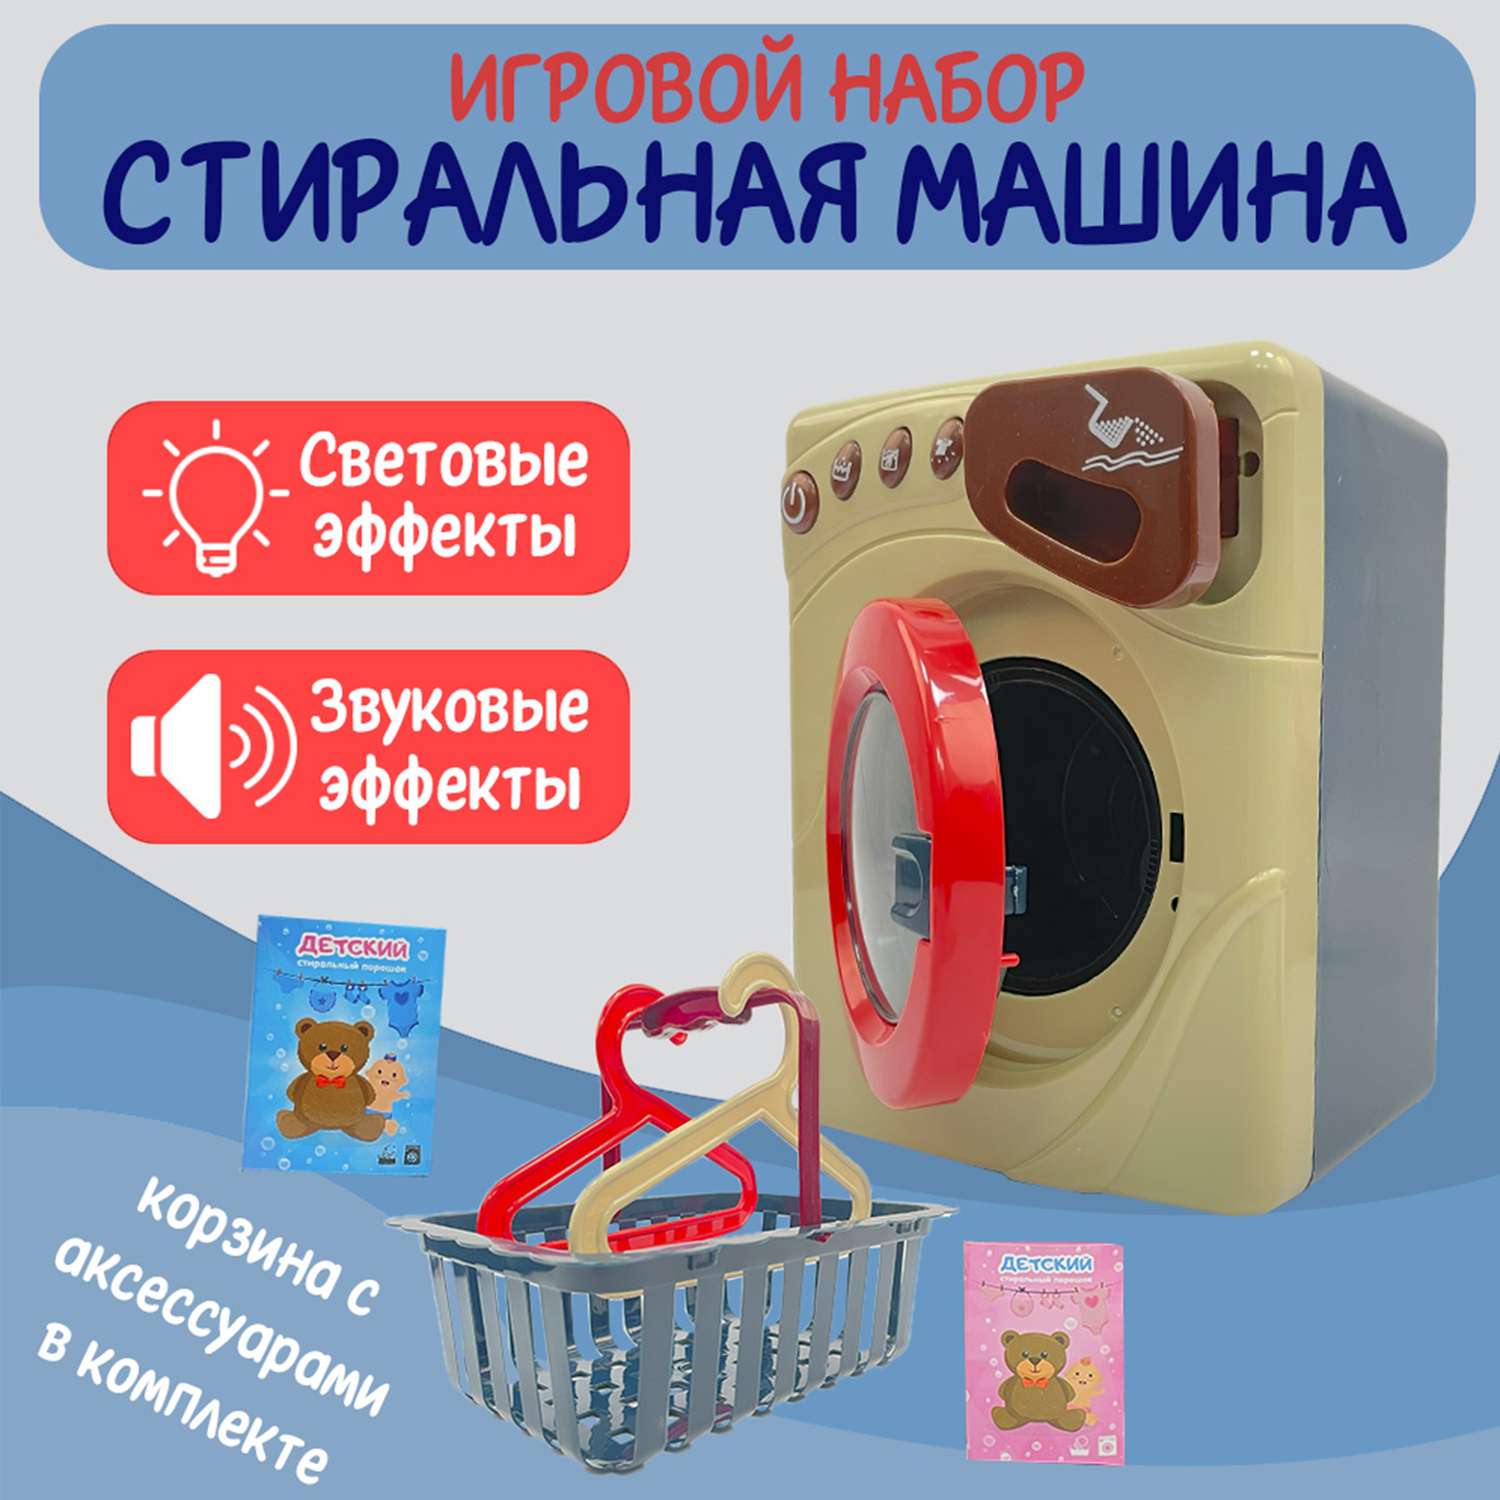 Детский игровой набор SHARKTOYS бытовой техники электрическая стиральная машина и корзина - фото 2